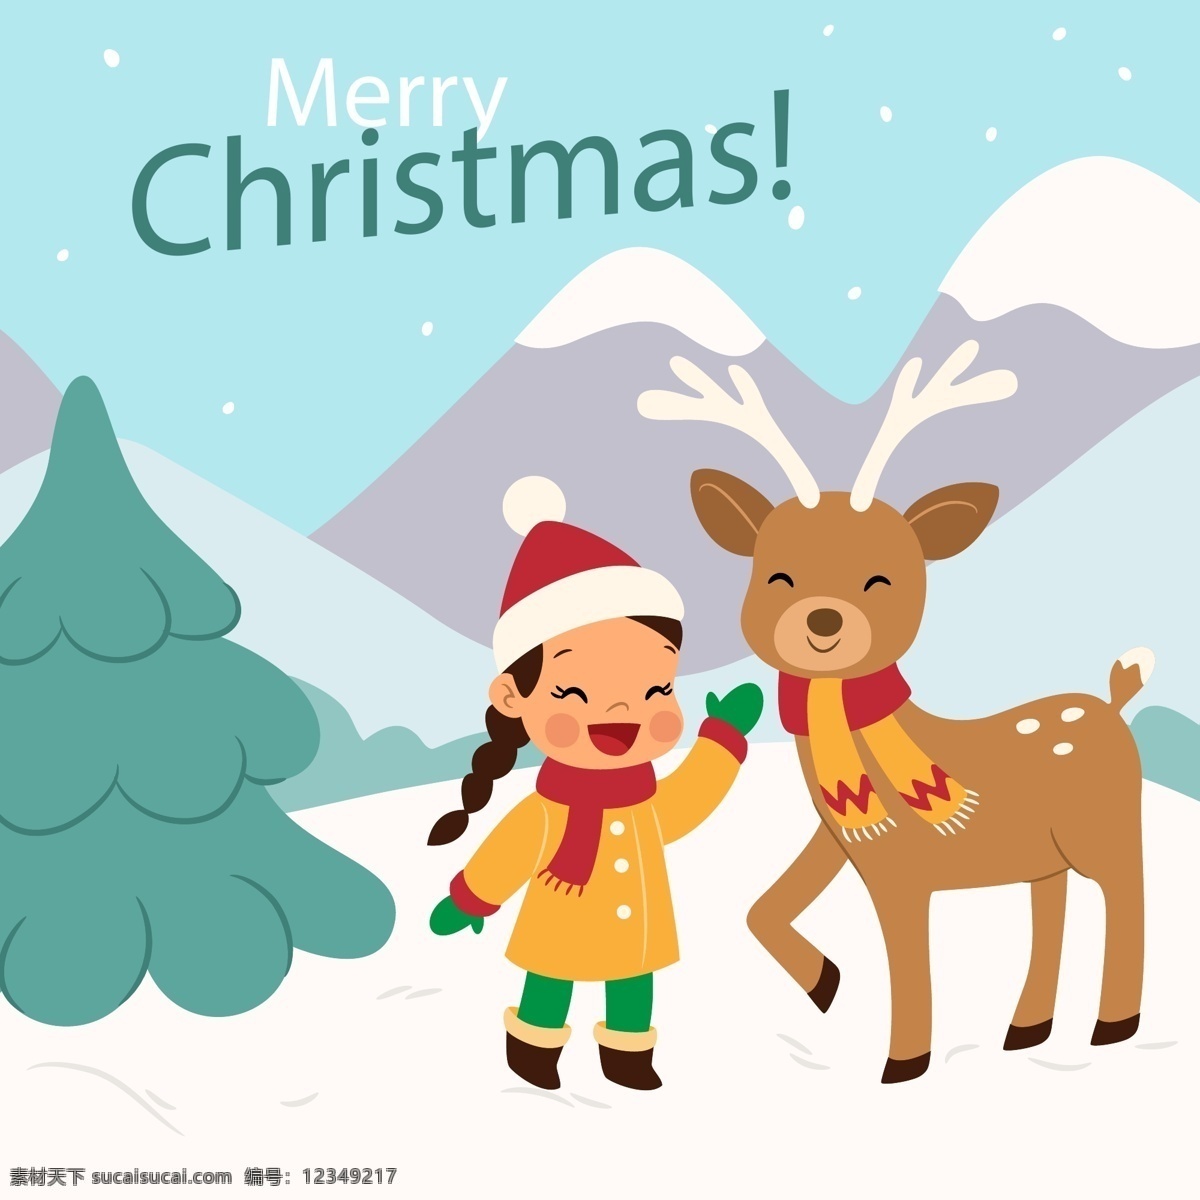 卡通 圣诞 风景 背景 女孩 驯鹿 节日素材 圣诞风景 圣诞节 圣诞素材 圣诞元素